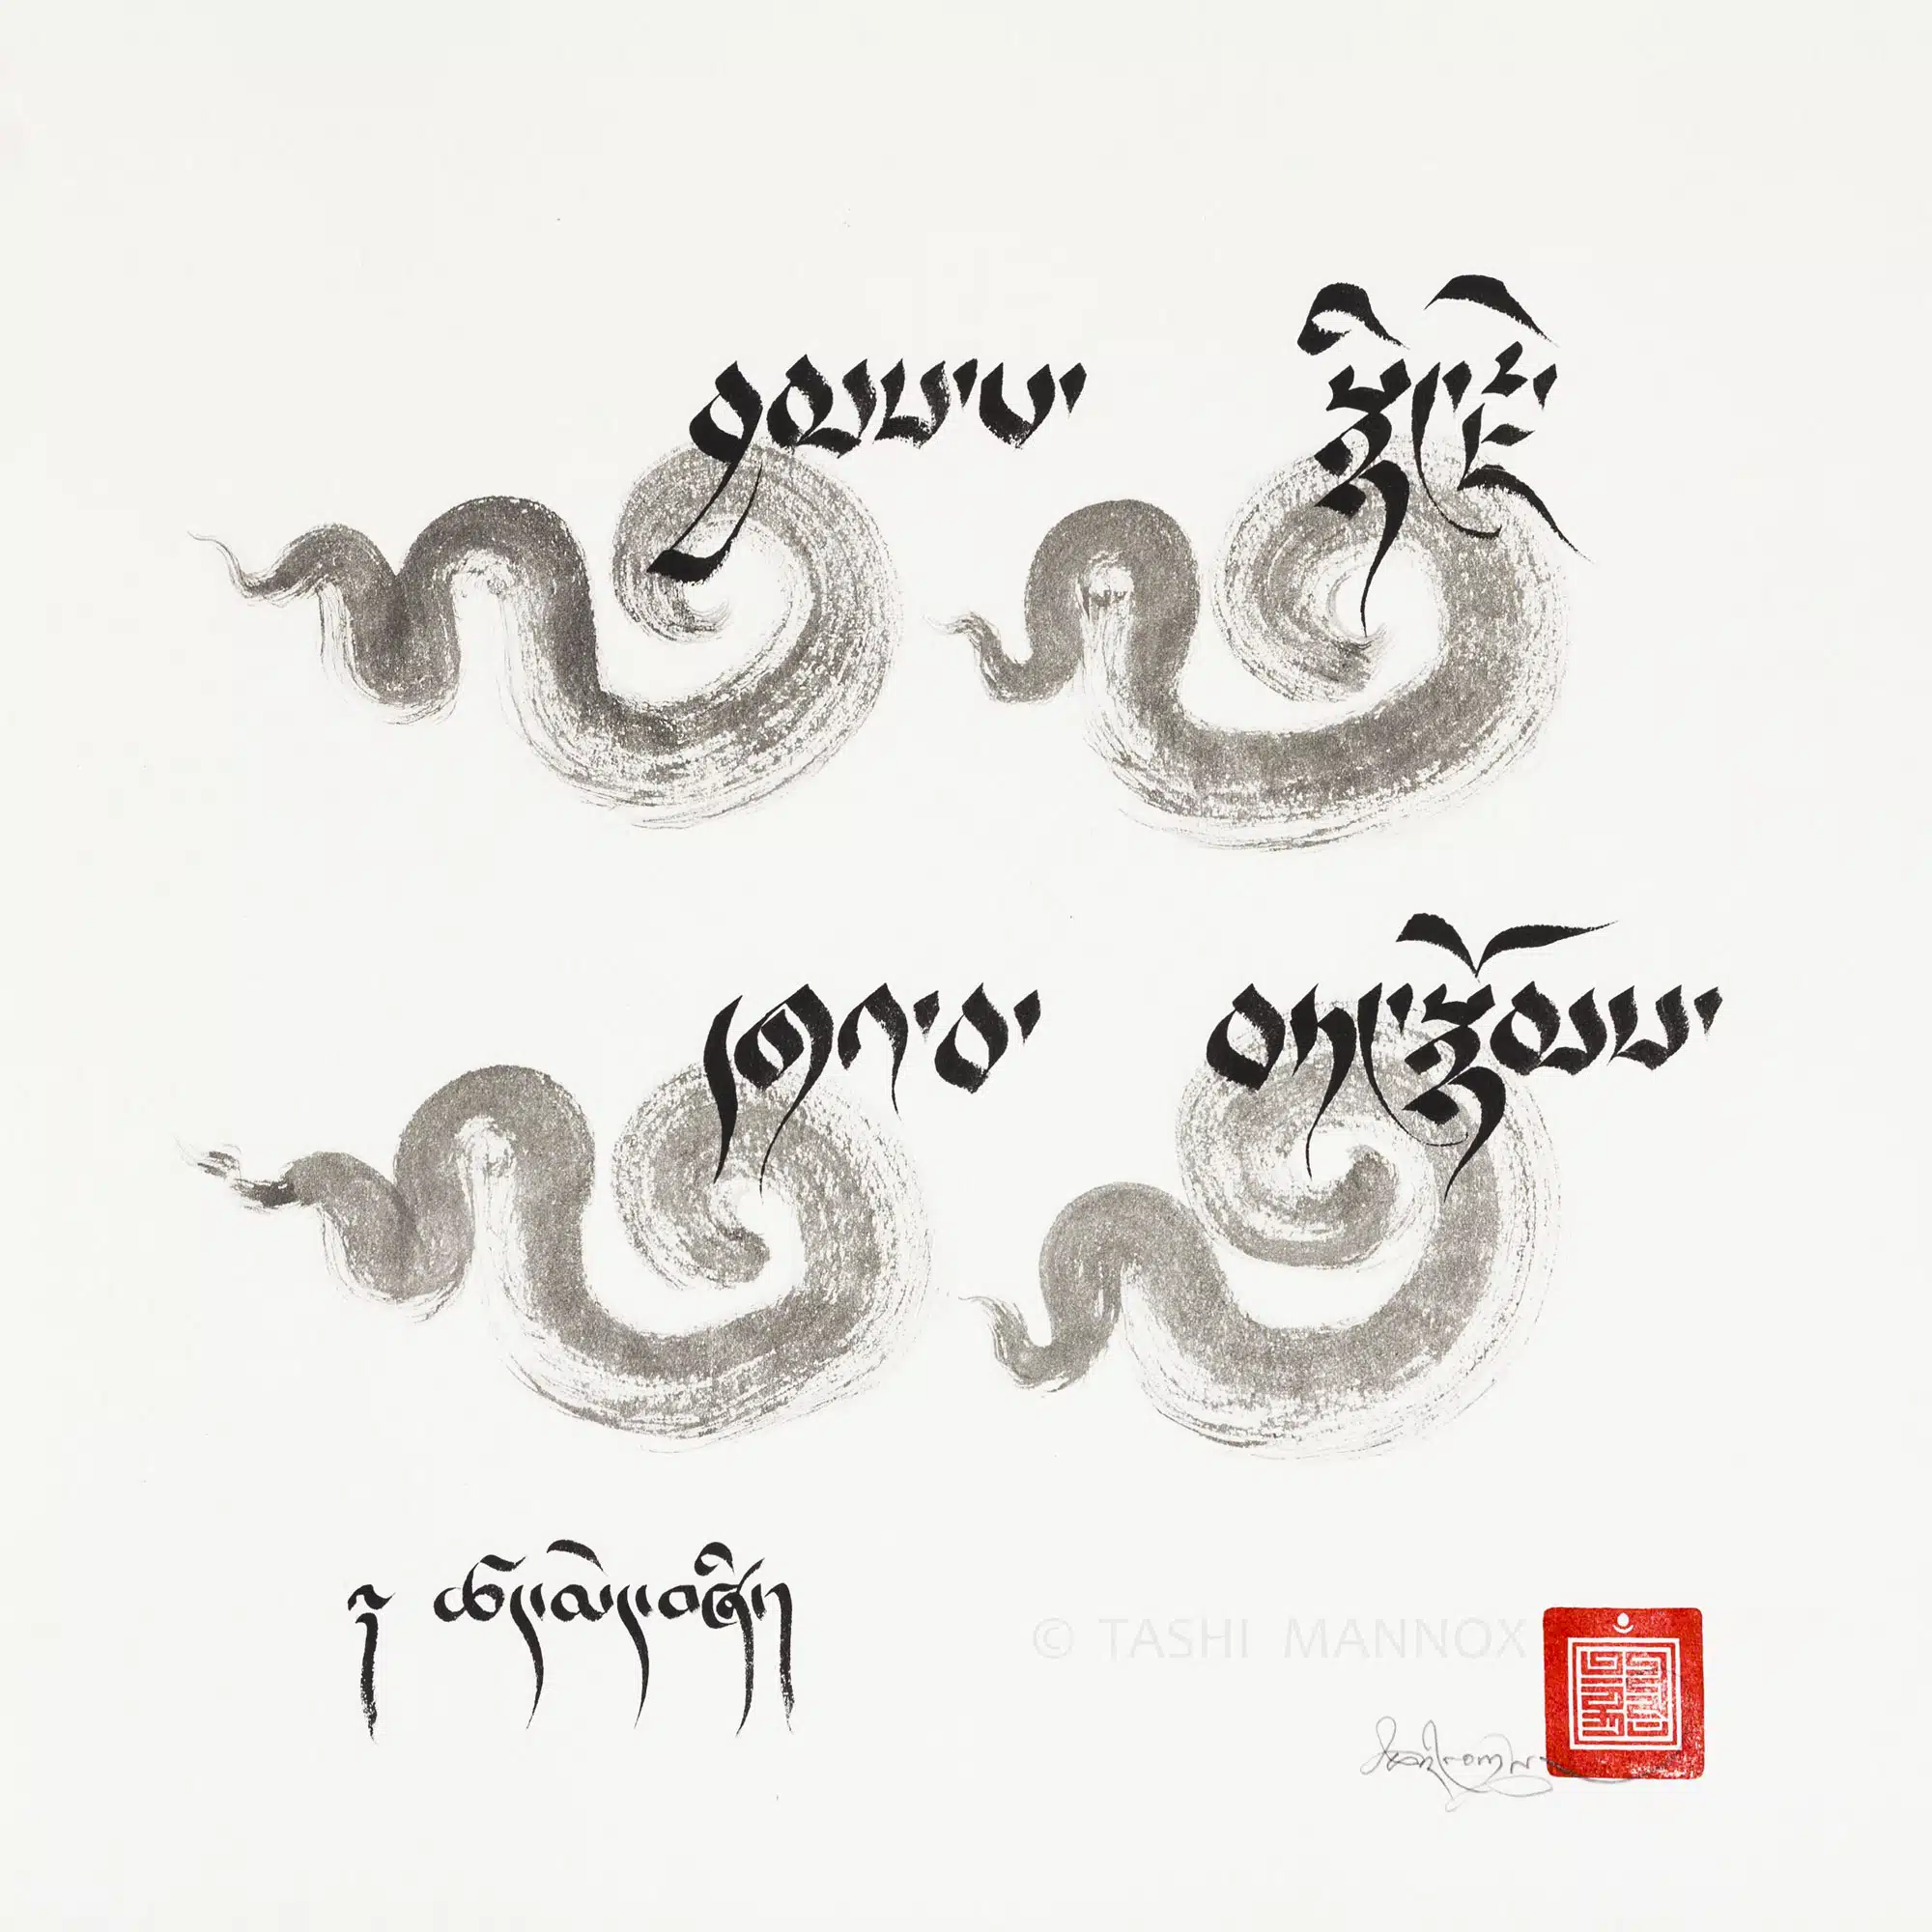 Tibetan tattoo, Screen printing designs, Buddhist art